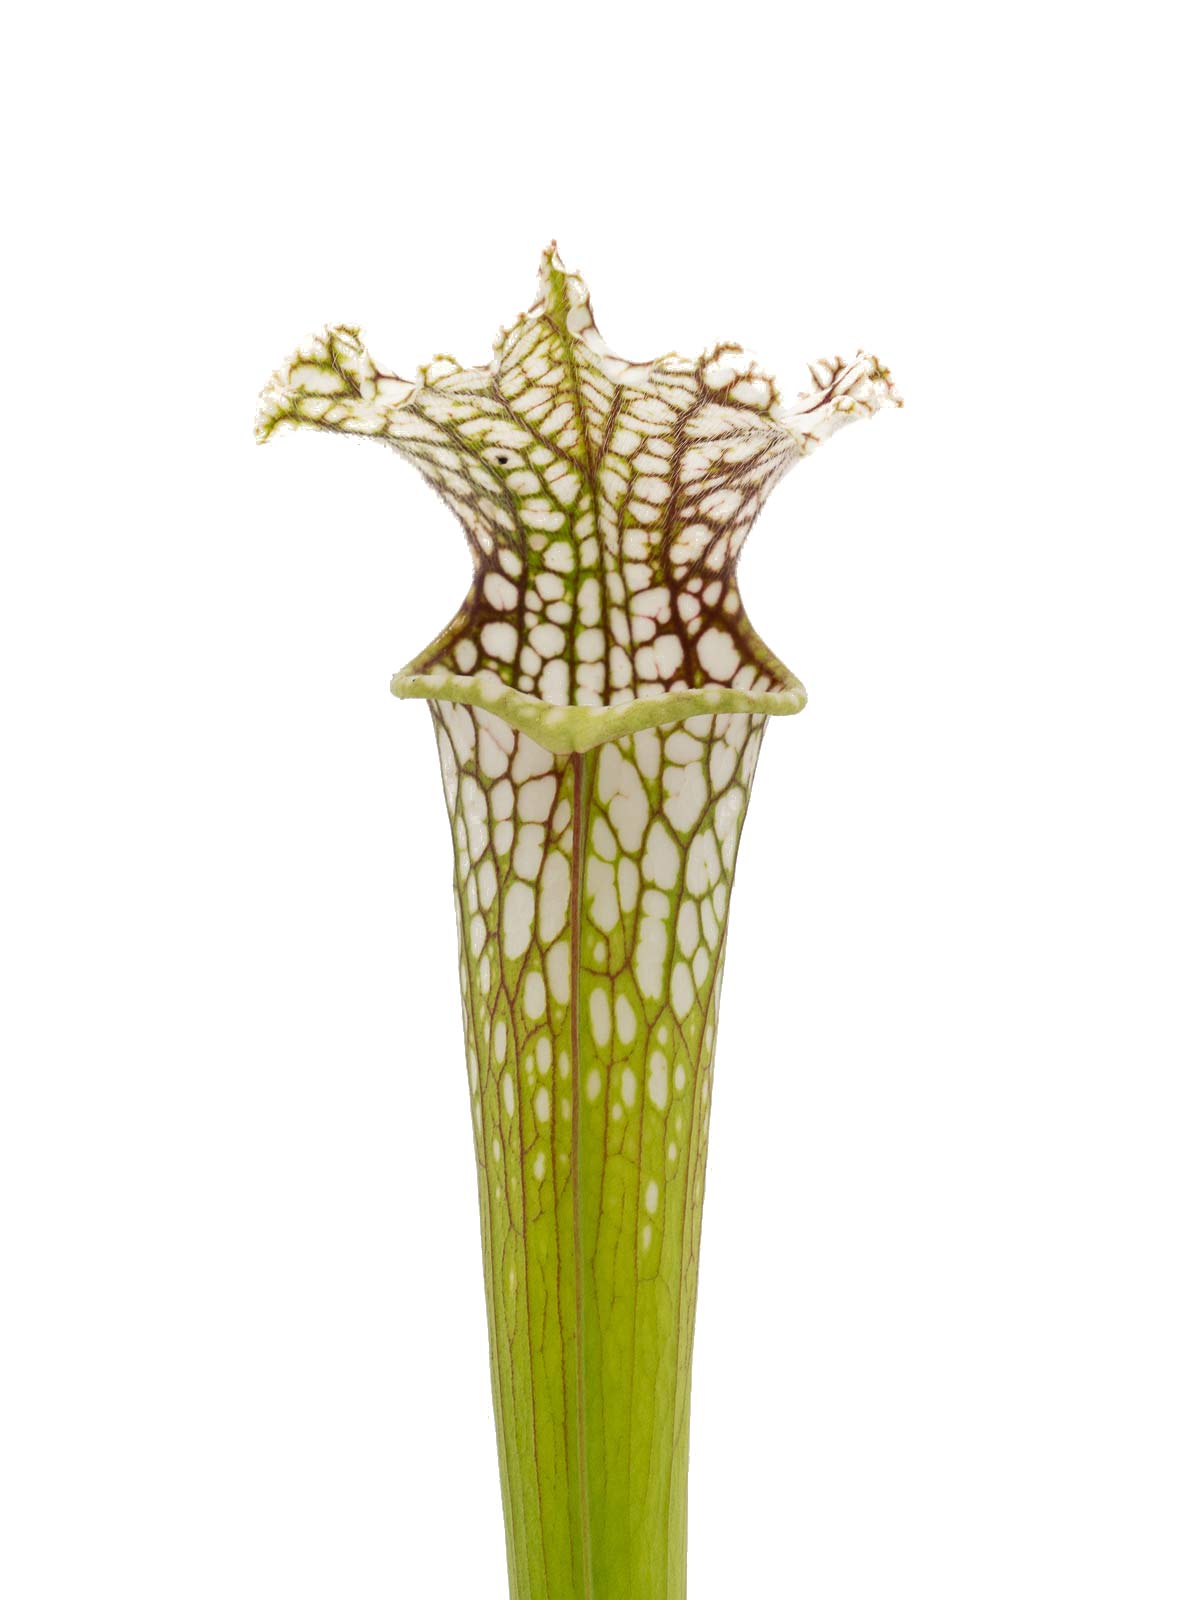 S. leucophylla - Peter Zeller